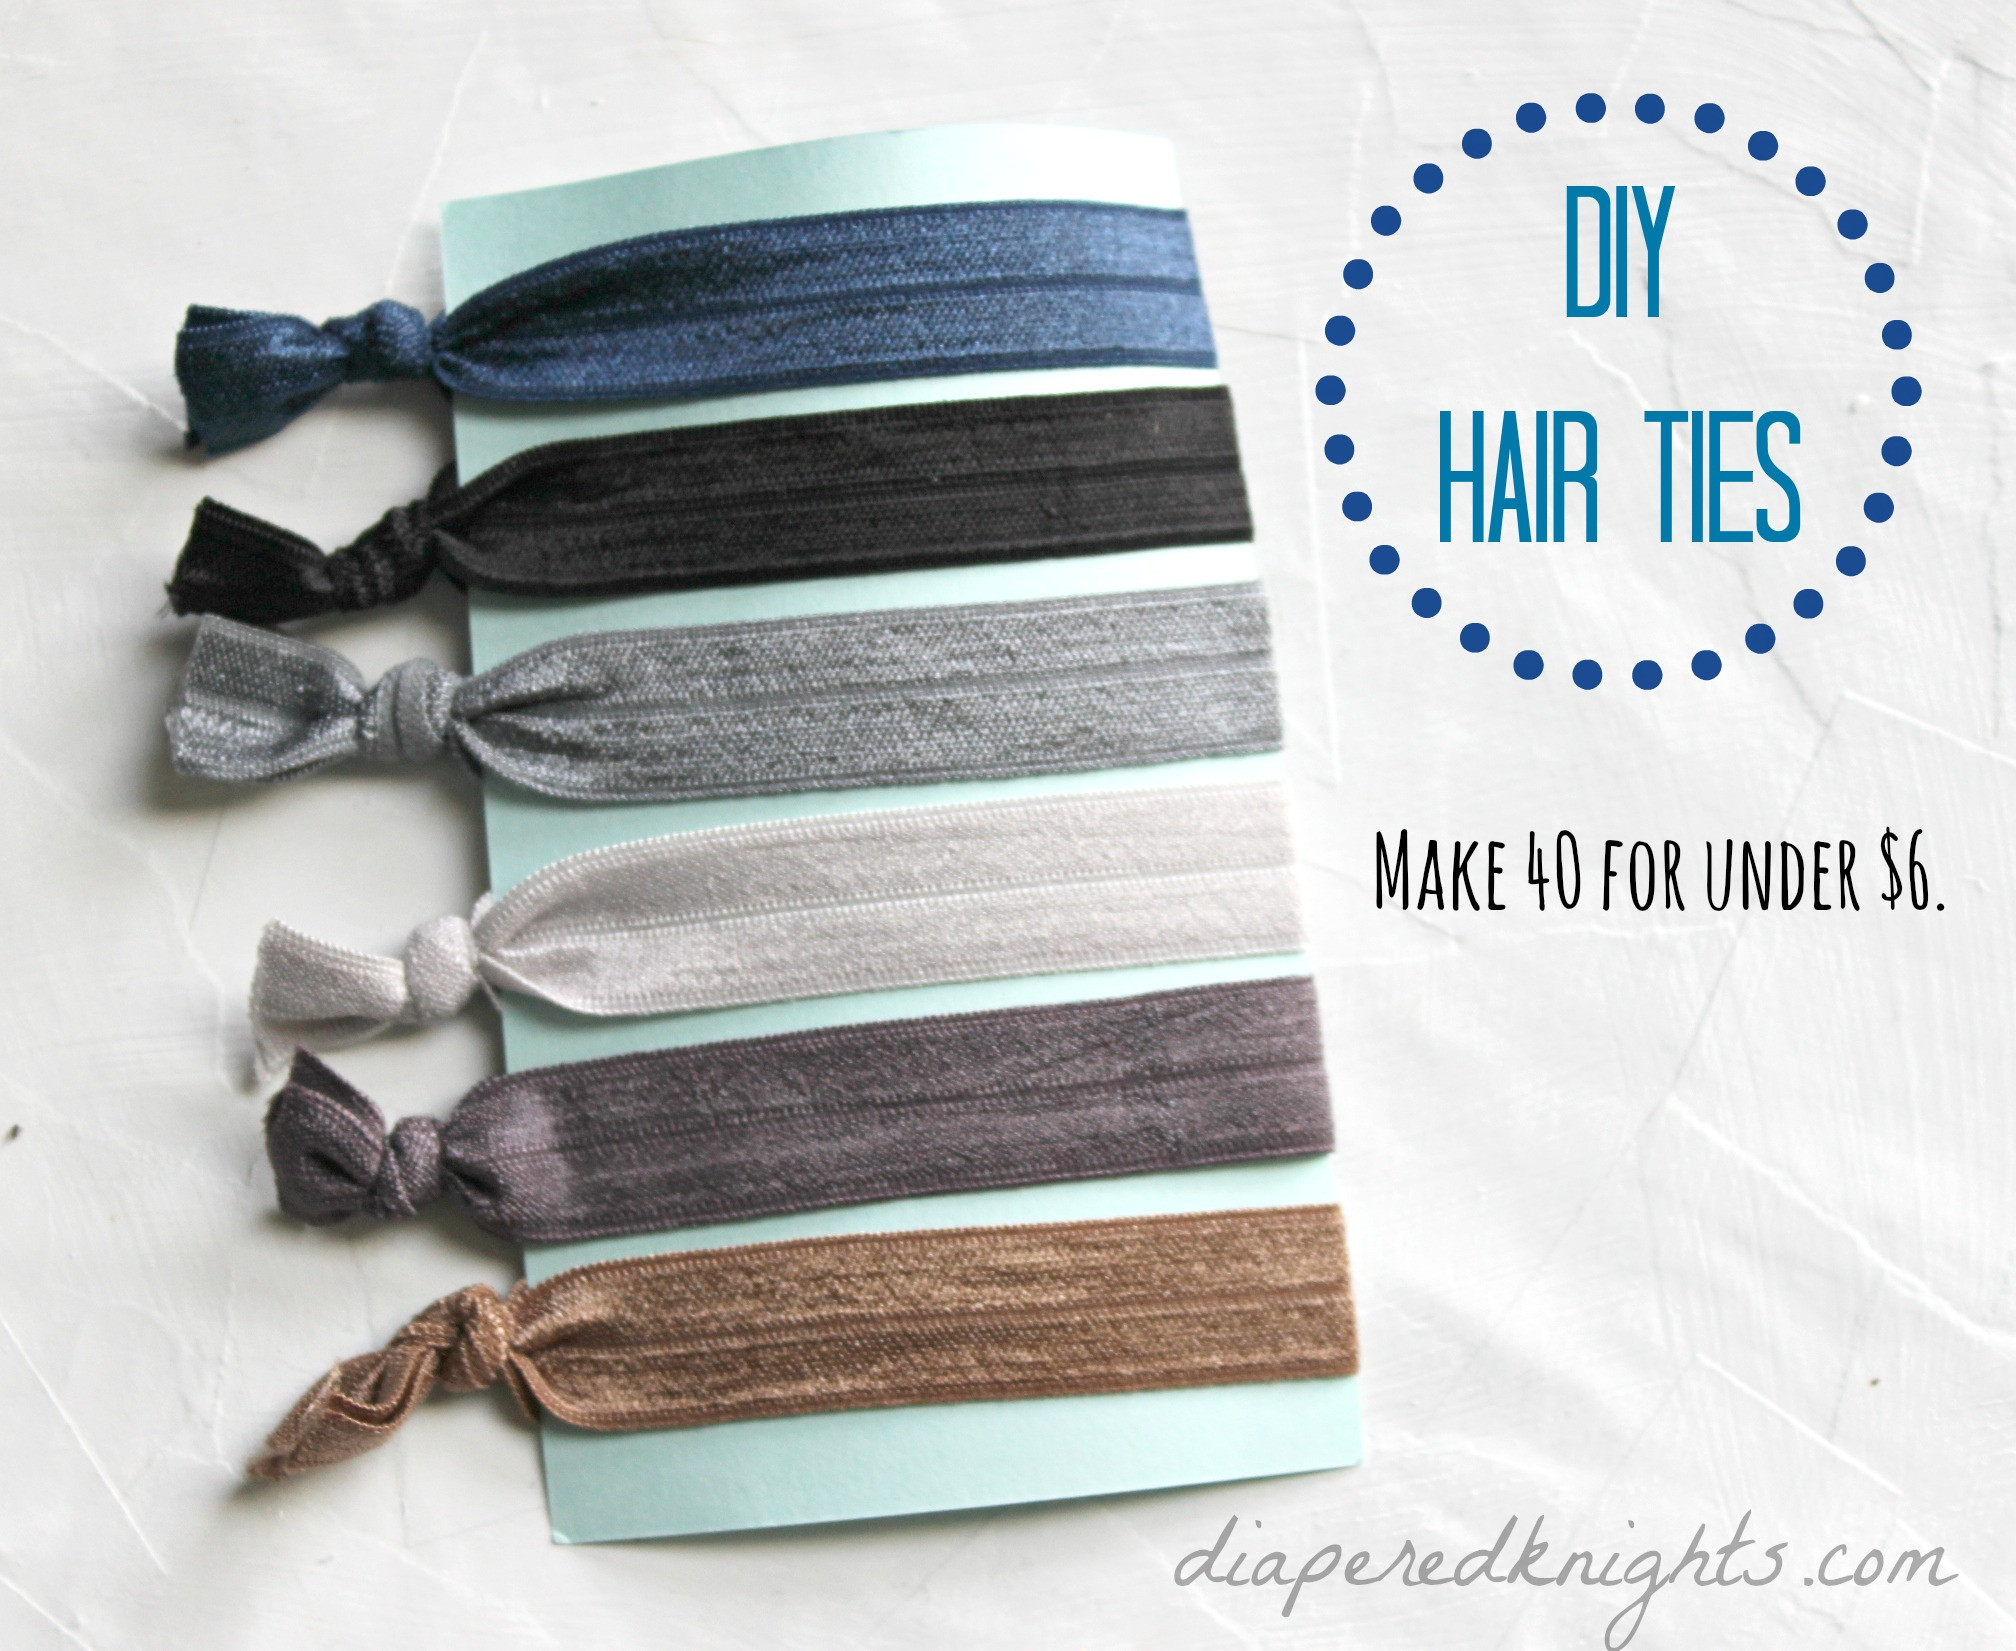 Best ideas about DIY Elastic Hair Ties
. Save or Pin DIY Elastic Hair Ties Now.